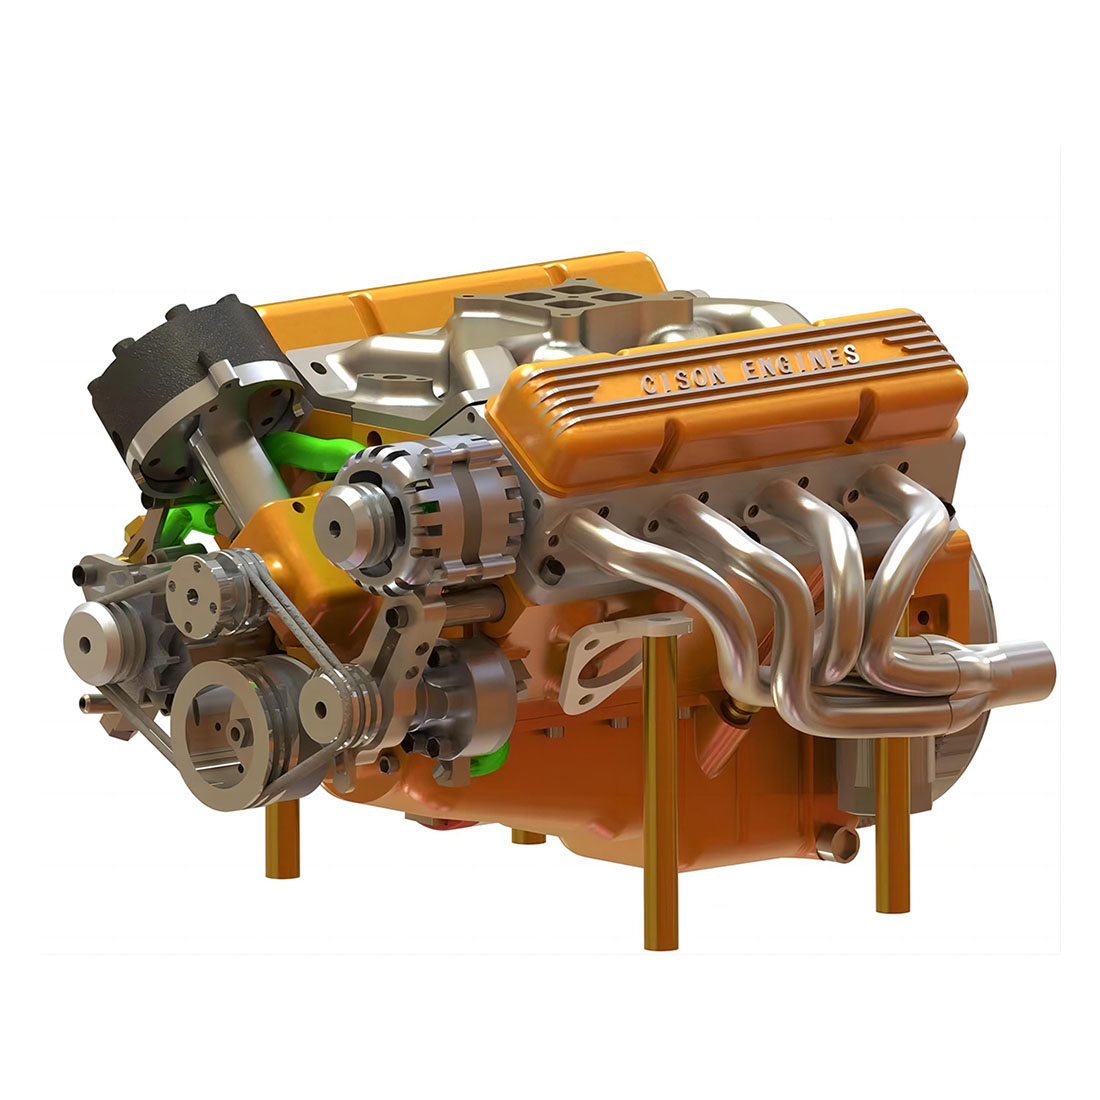 CISON V8 OHV Engine